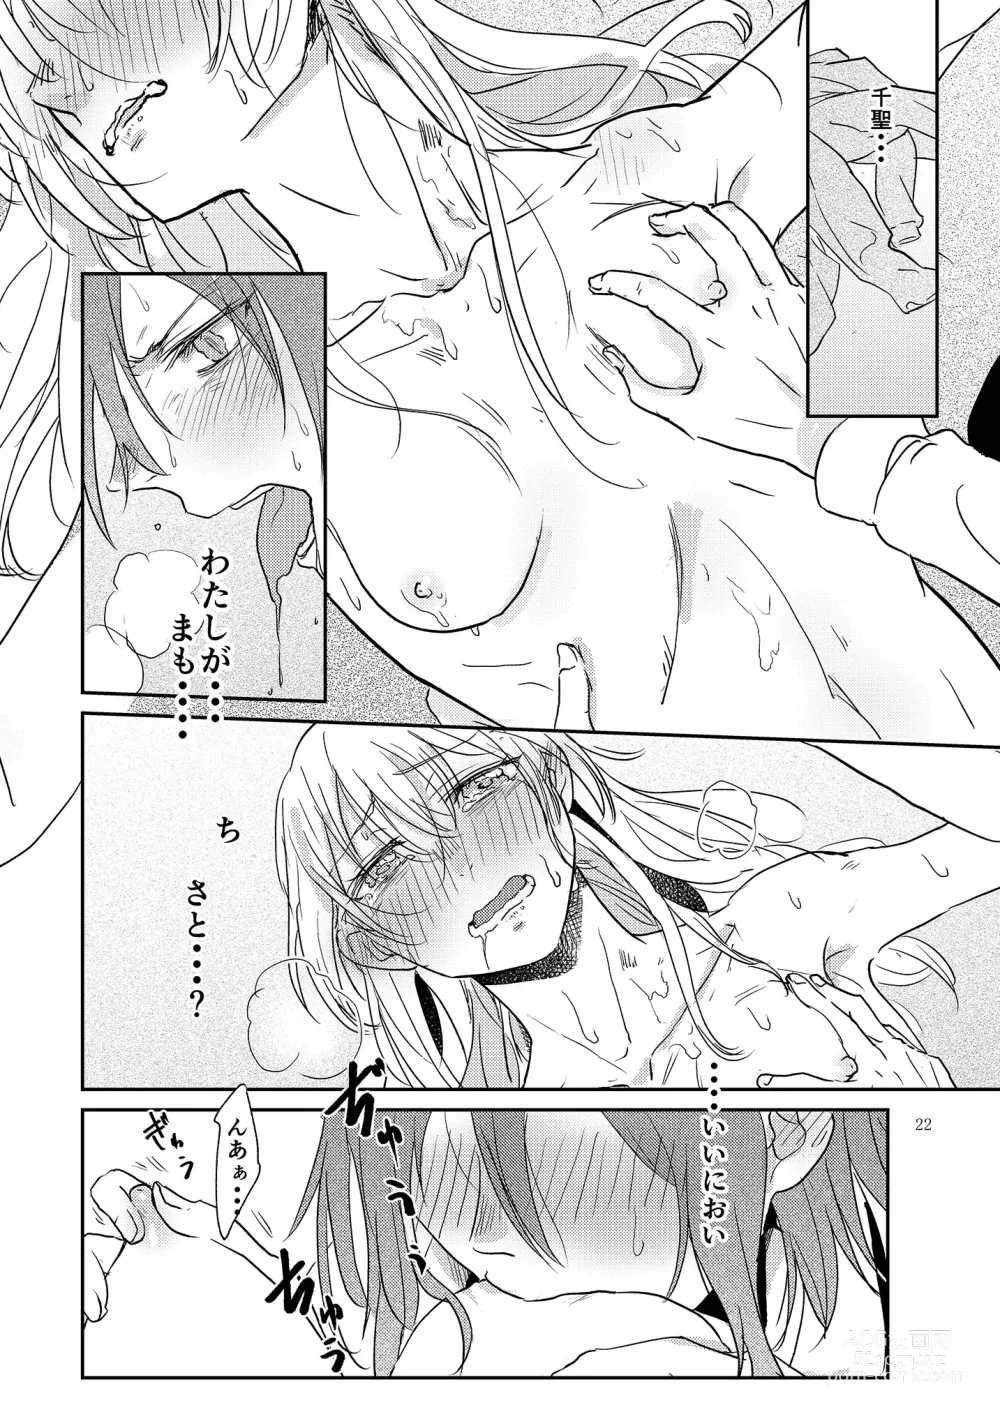 Page 22 of doujinshi Kimi no Tame ni Watashi ni wa